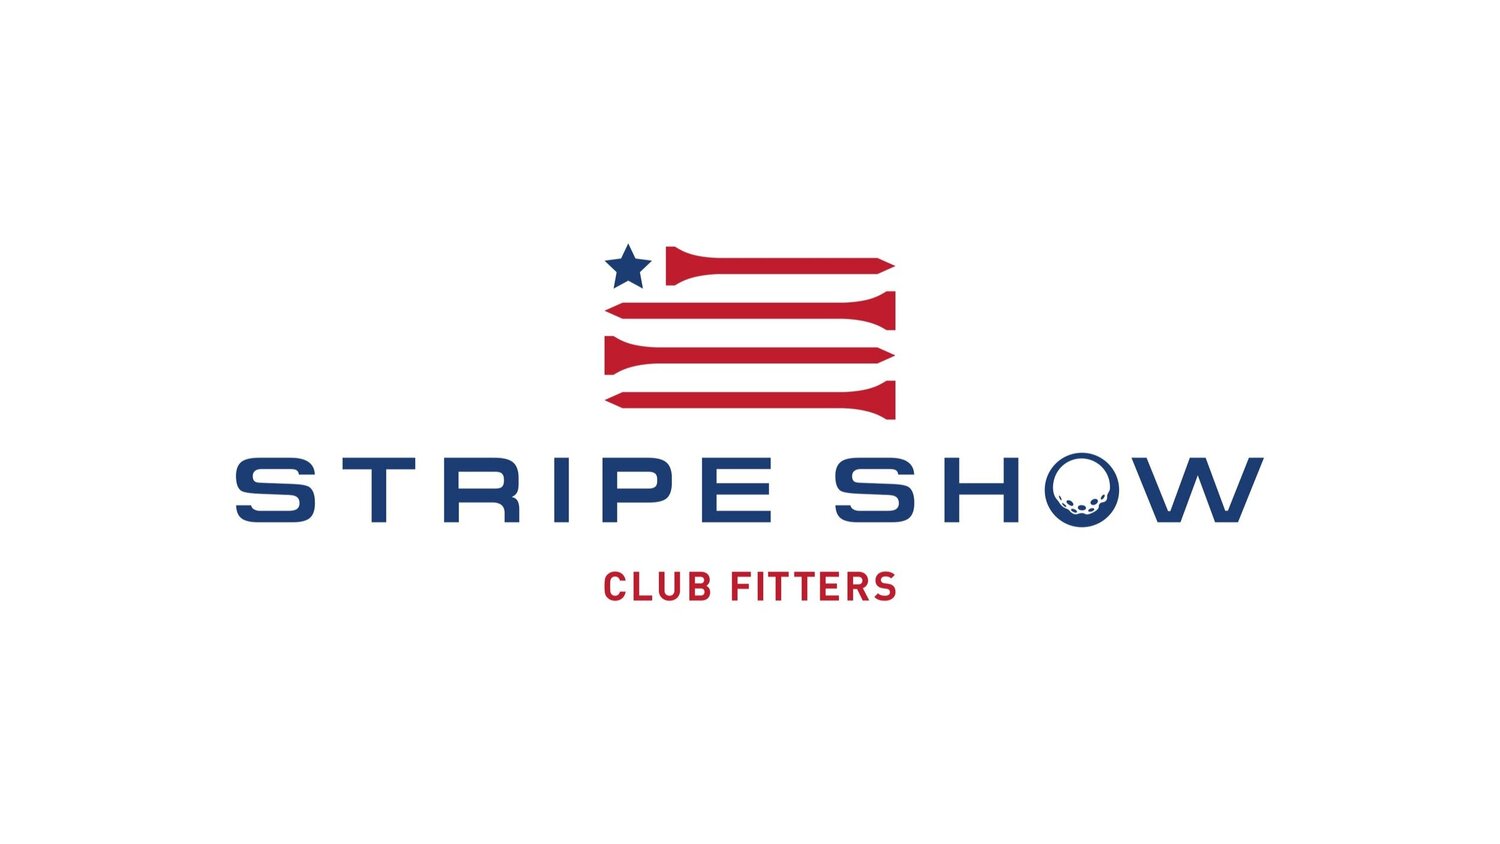 Stripe Show Golf Club Fitting